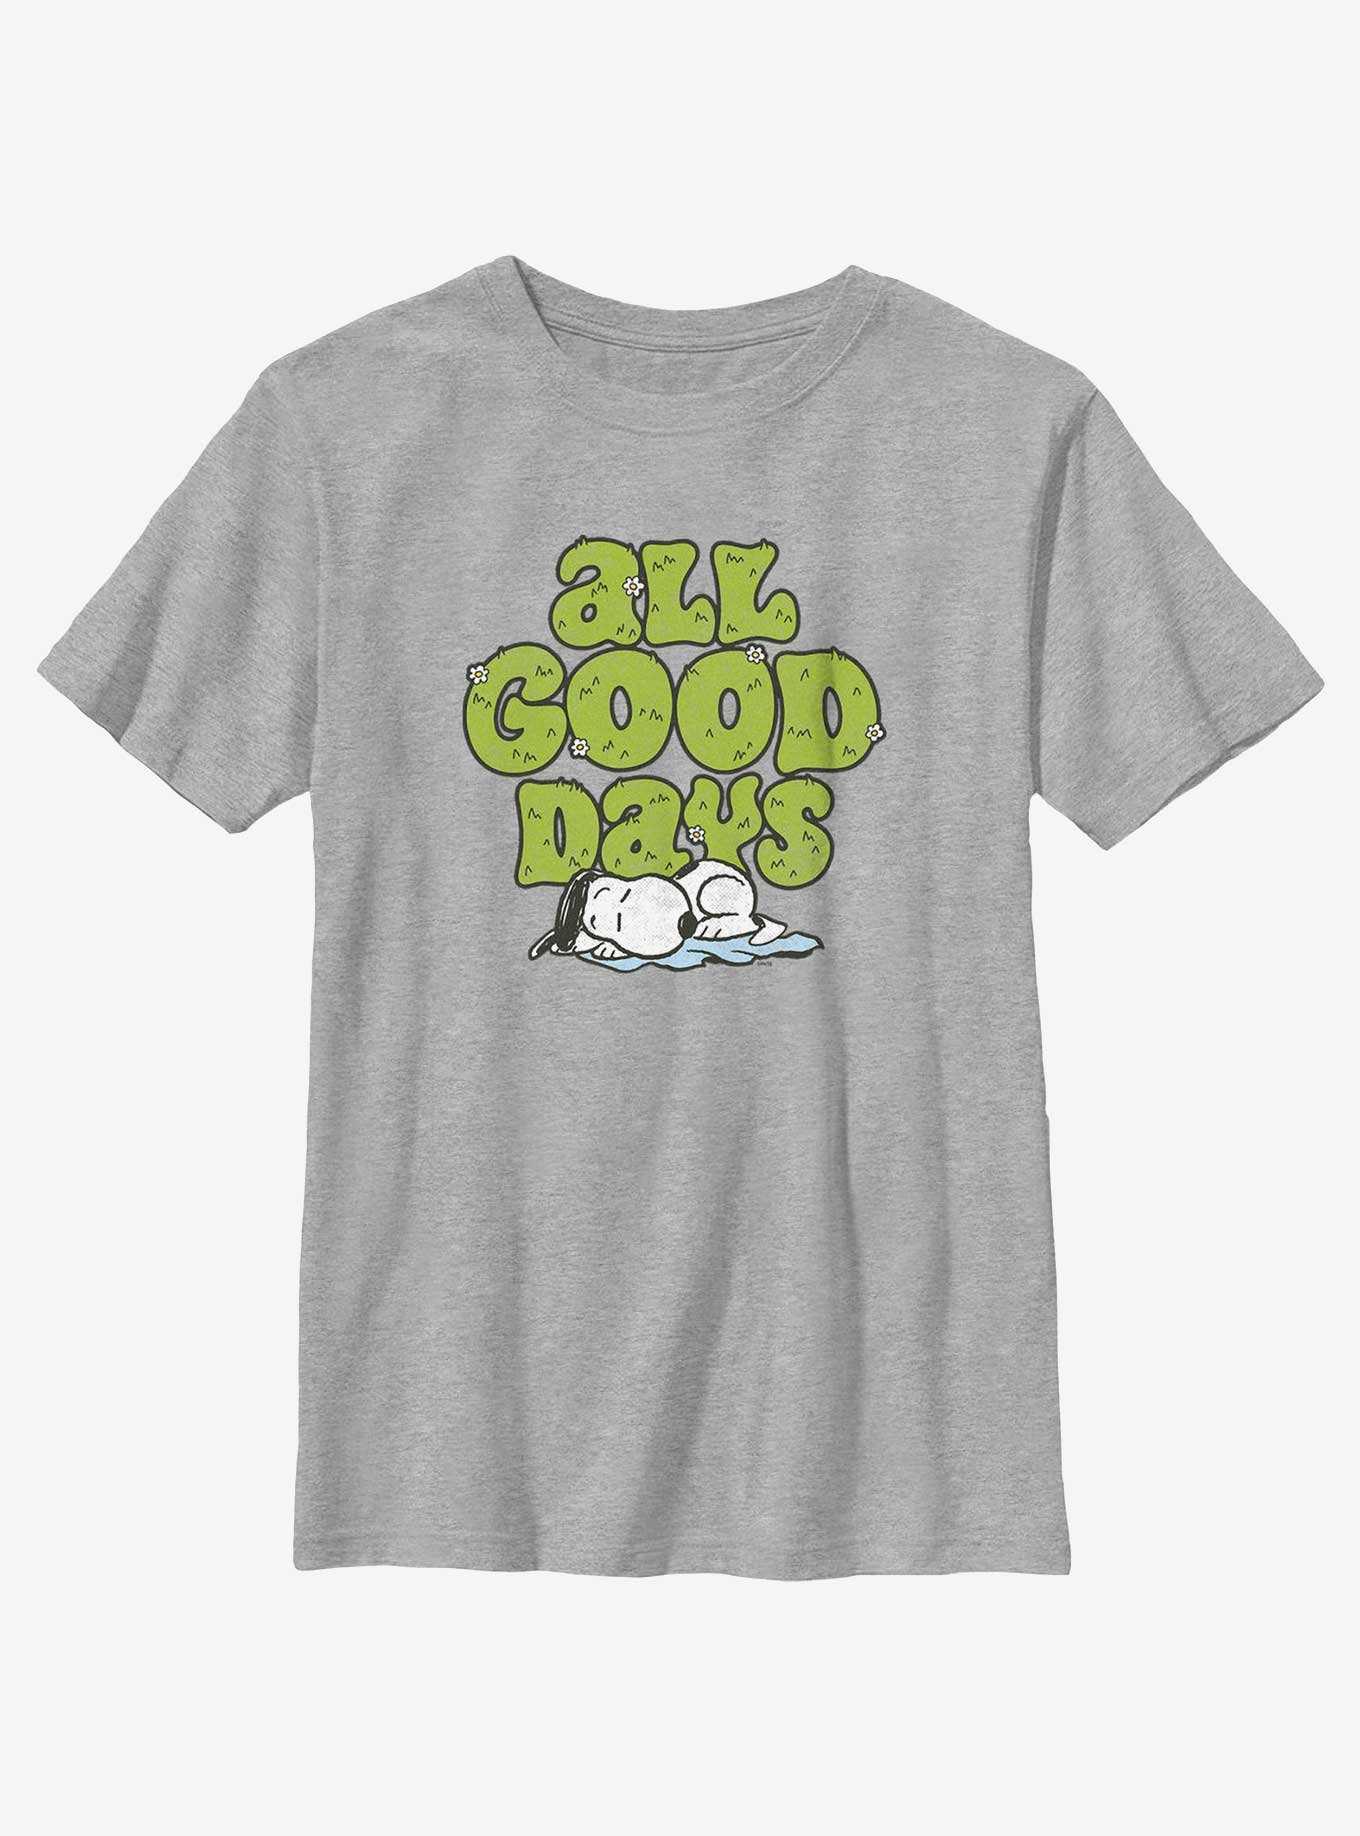 Youth Grey Snoopy Tshirt